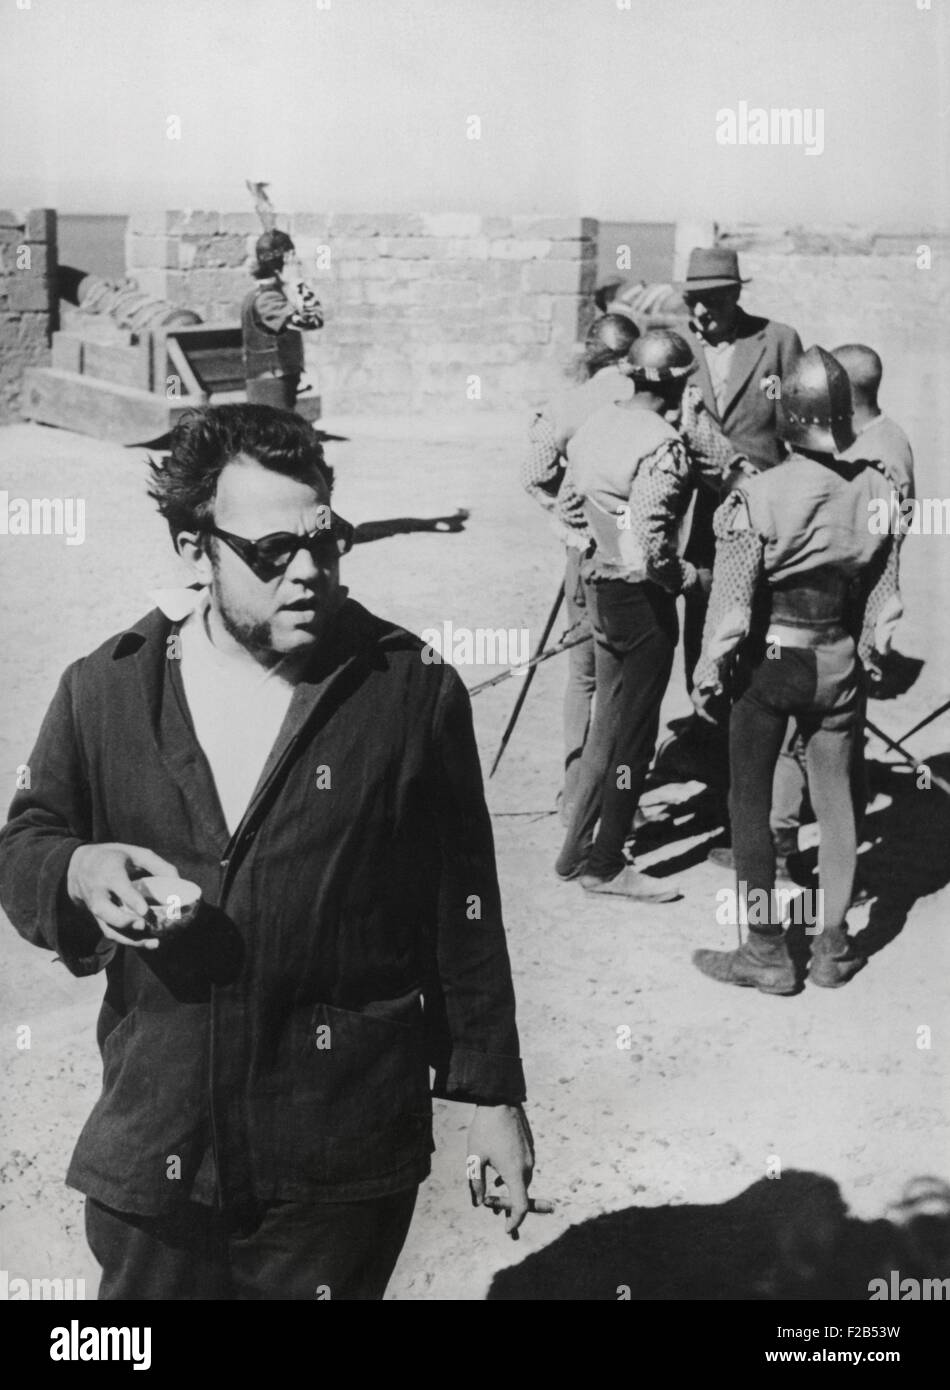 Orson Welles Regie 1952 Film, "Othello". Er filmte die Wälle und Kanonen des portugiesischen Forts auf Nagador, Marokko. Welles spielte auch die Titelrolle. 17. März 1950. -(BSLOC 2014 17 97) Stockfoto